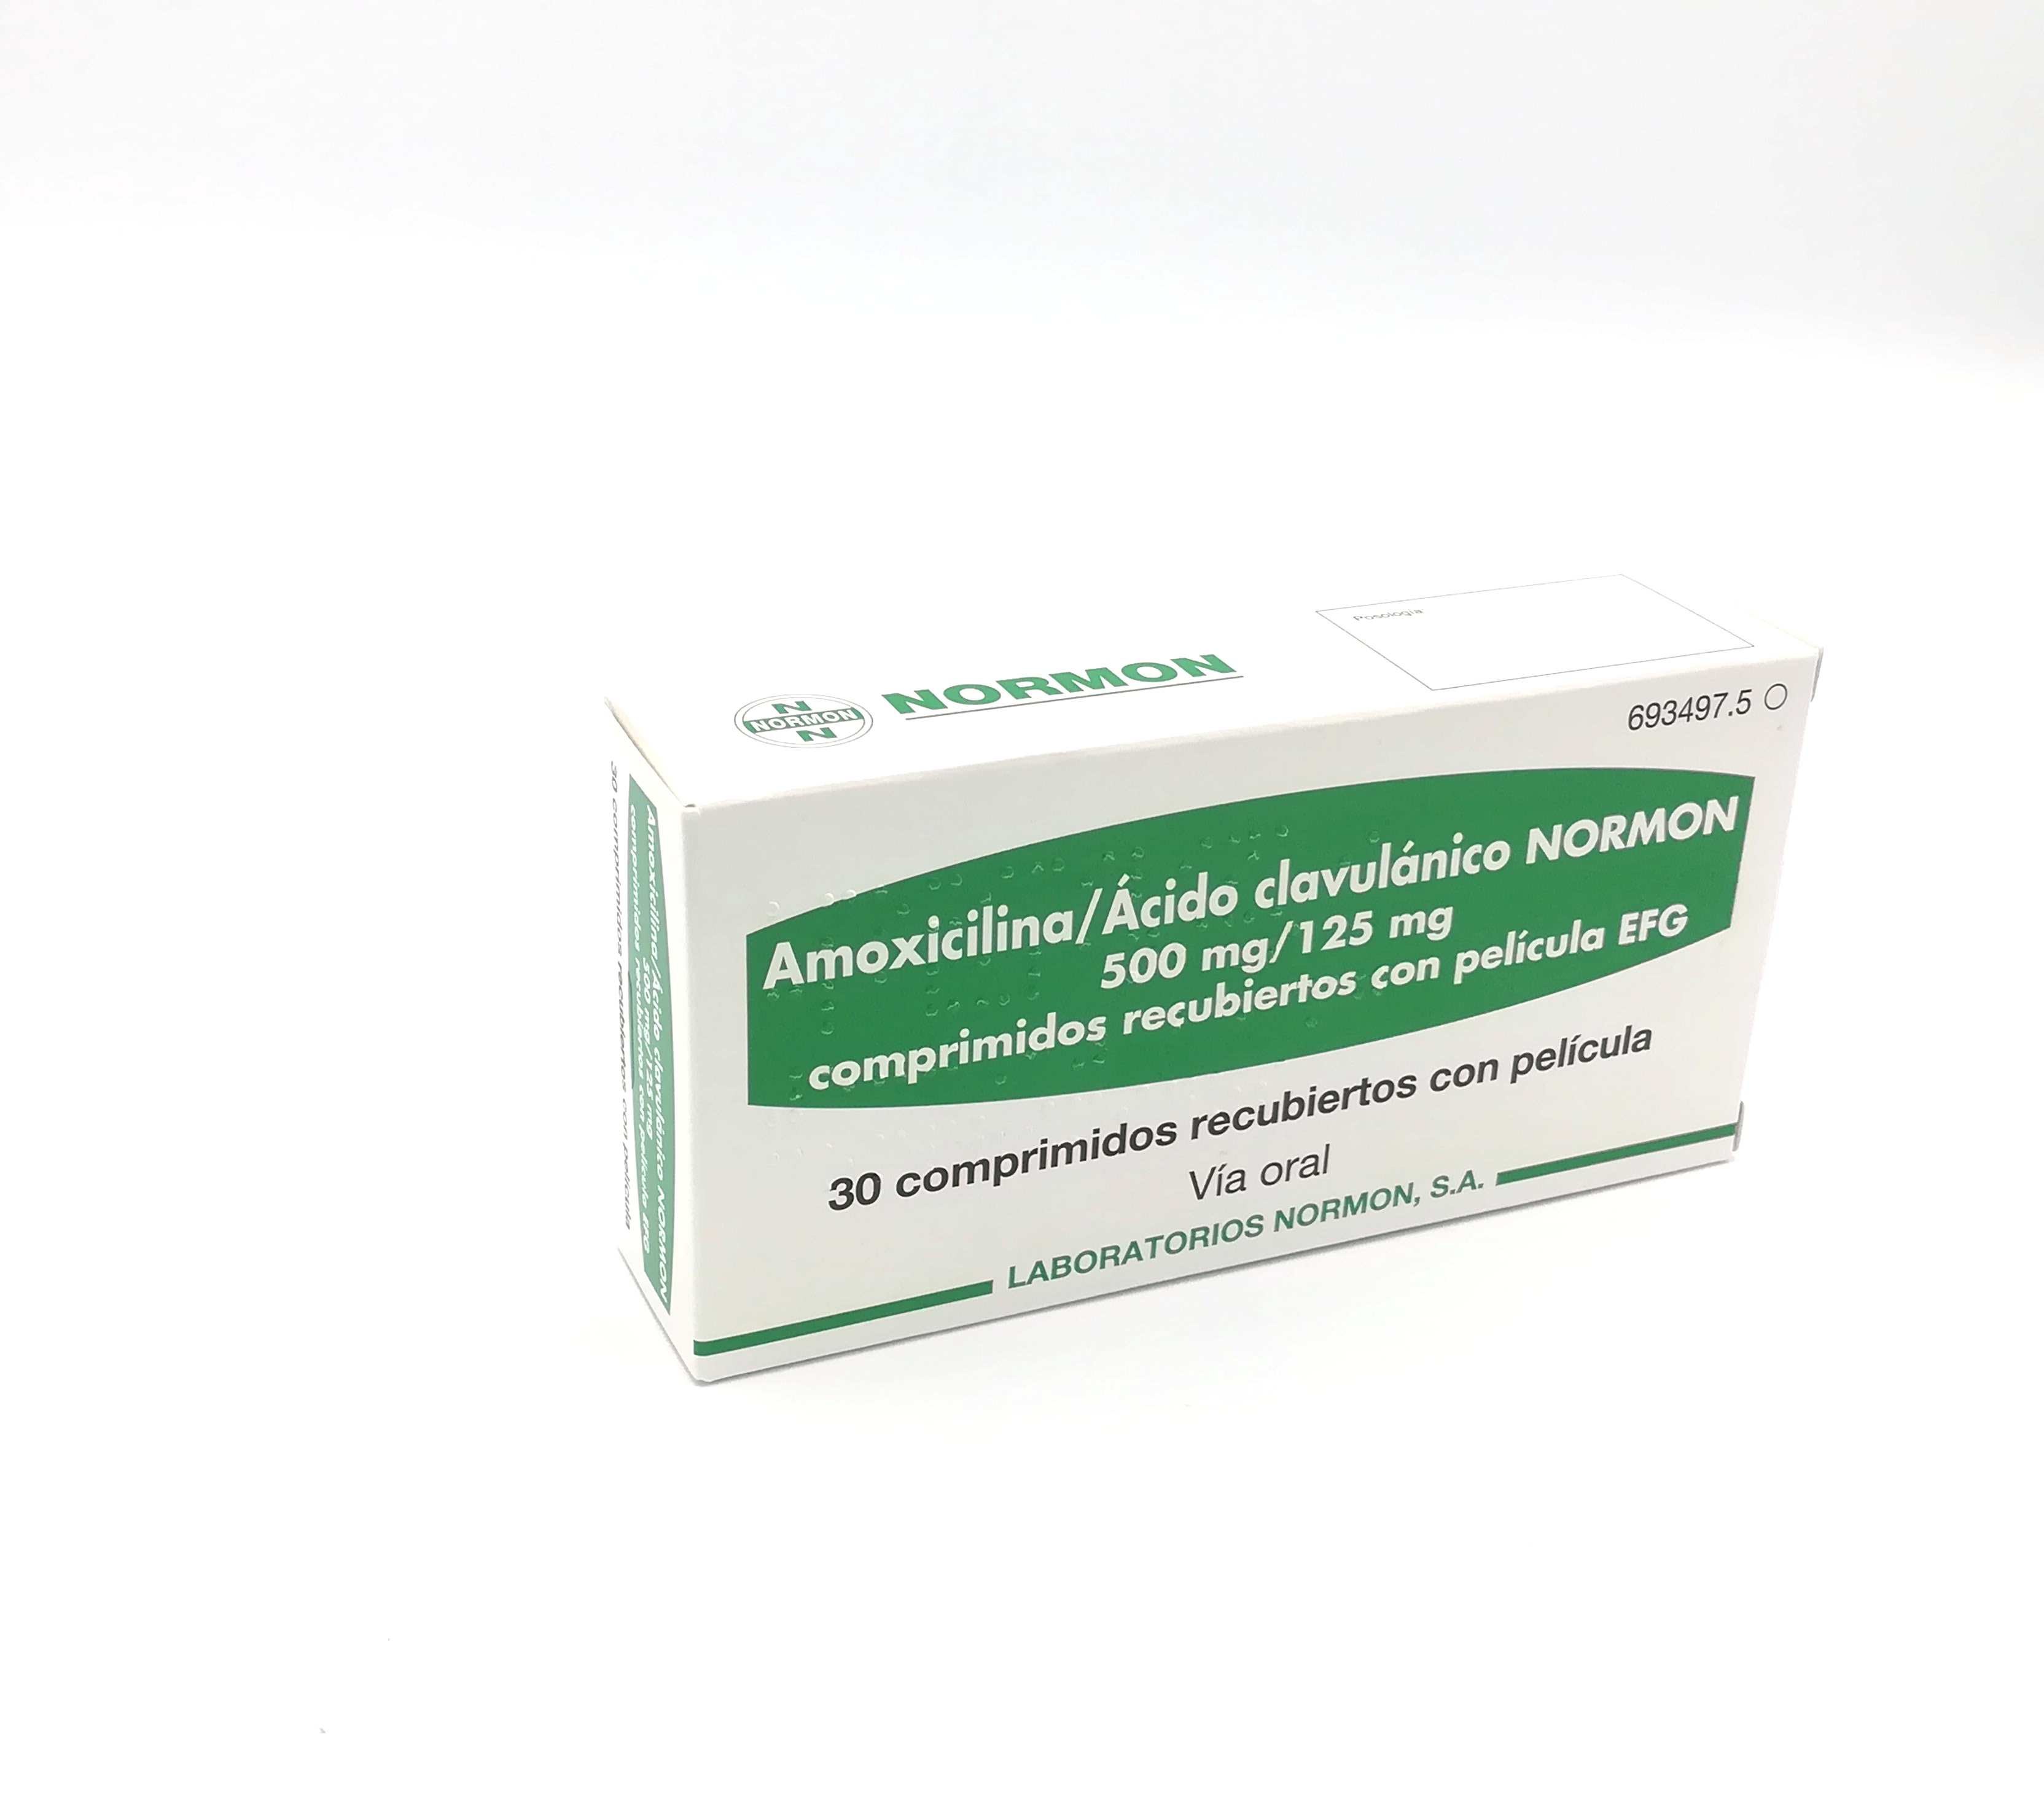 comerciante profundo puenting AMOXICILINA/ACIDO CLAVULANICO NORMON EFG 500 mg/125 mg 500 COMPRIMIDOS  RECUBIERTOS - Farmacéuticos